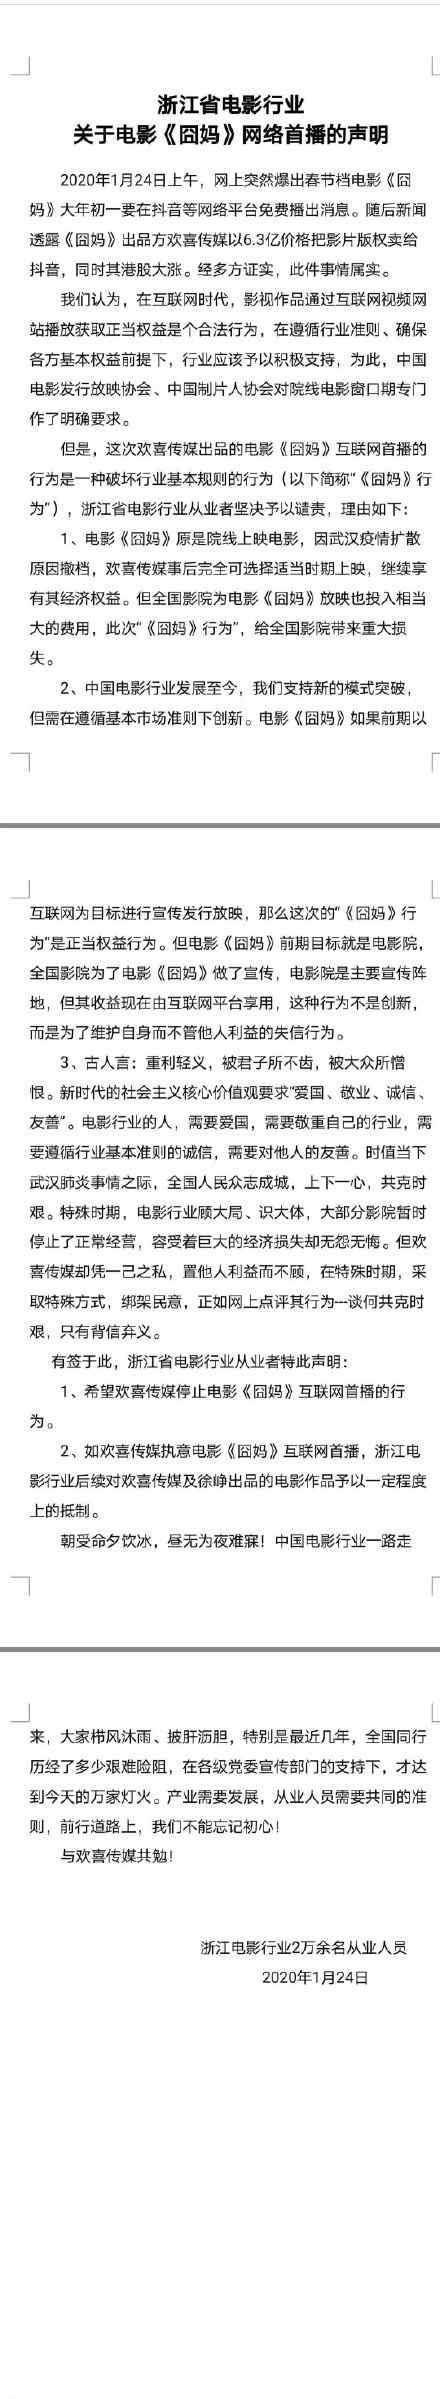 电影行业谴责囧妈 浙江省电影行业谴责《囧妈》网络首播